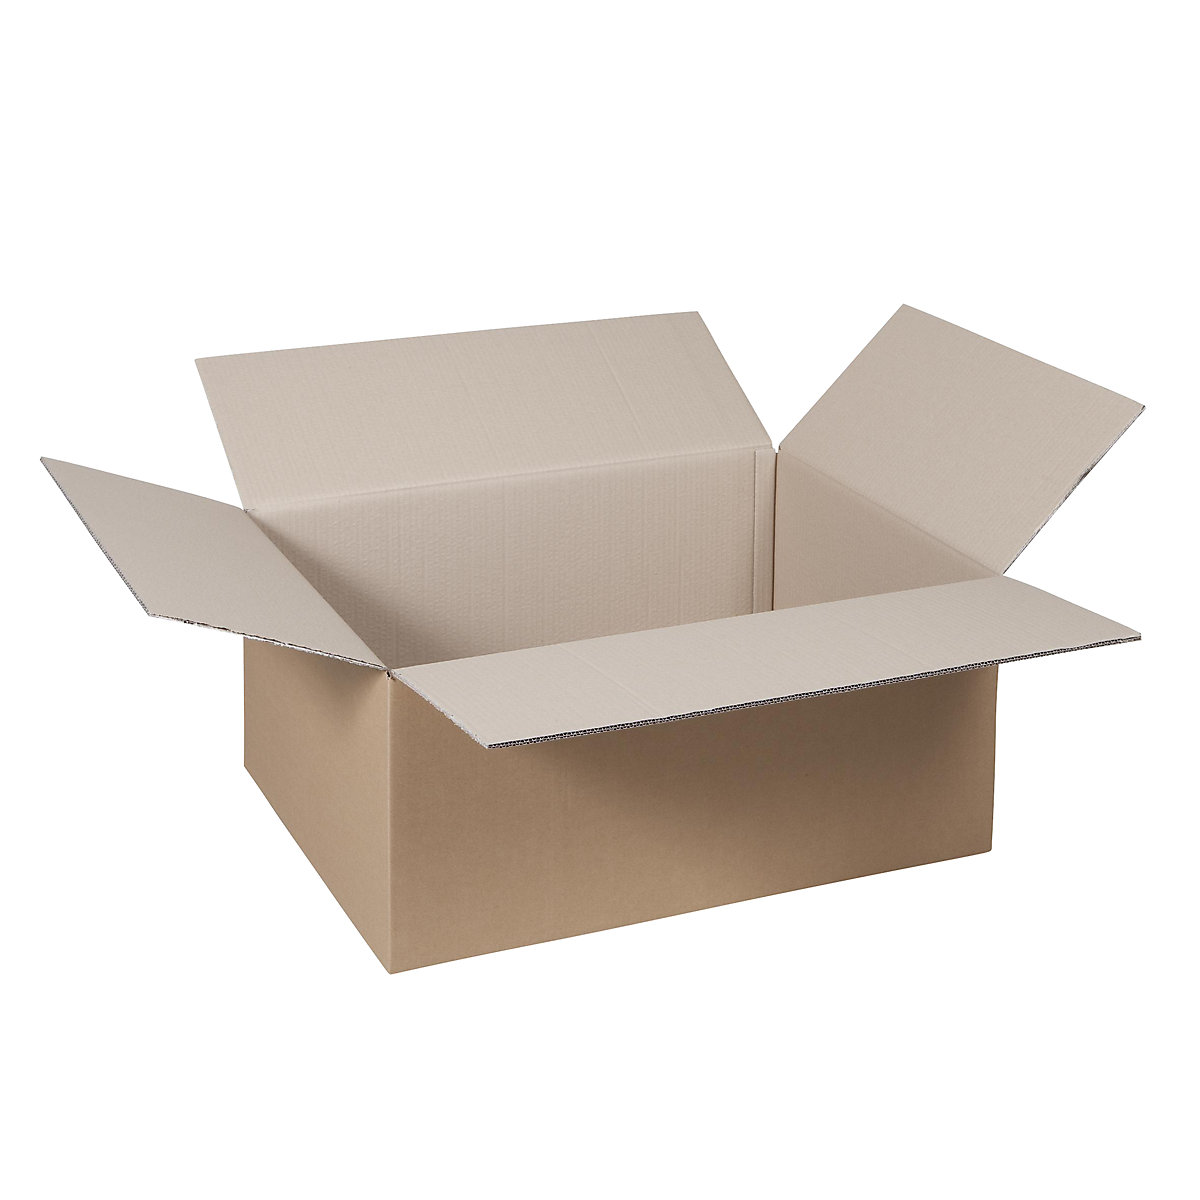 Cutie de carton pliantă, FEFCO 0201, cu 2 straturi de carton ondulat, dimensiuni interioare 390 x 290 x 200 mm, amb. 100 buc.-52